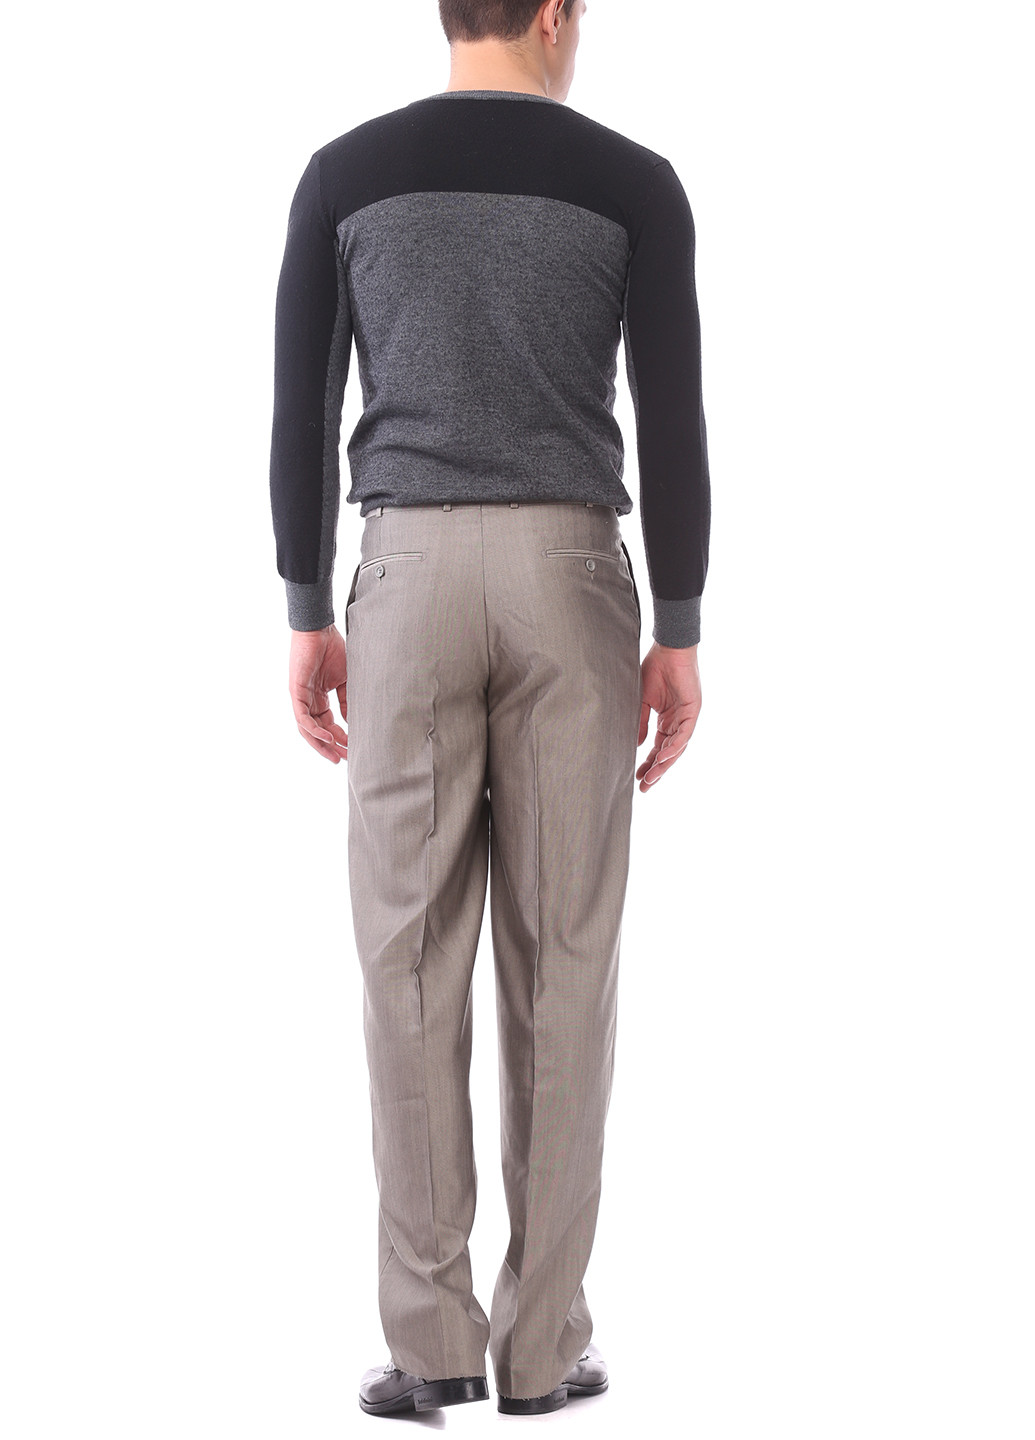 Серые классические демисезонные прямые брюки Pierre Cardin